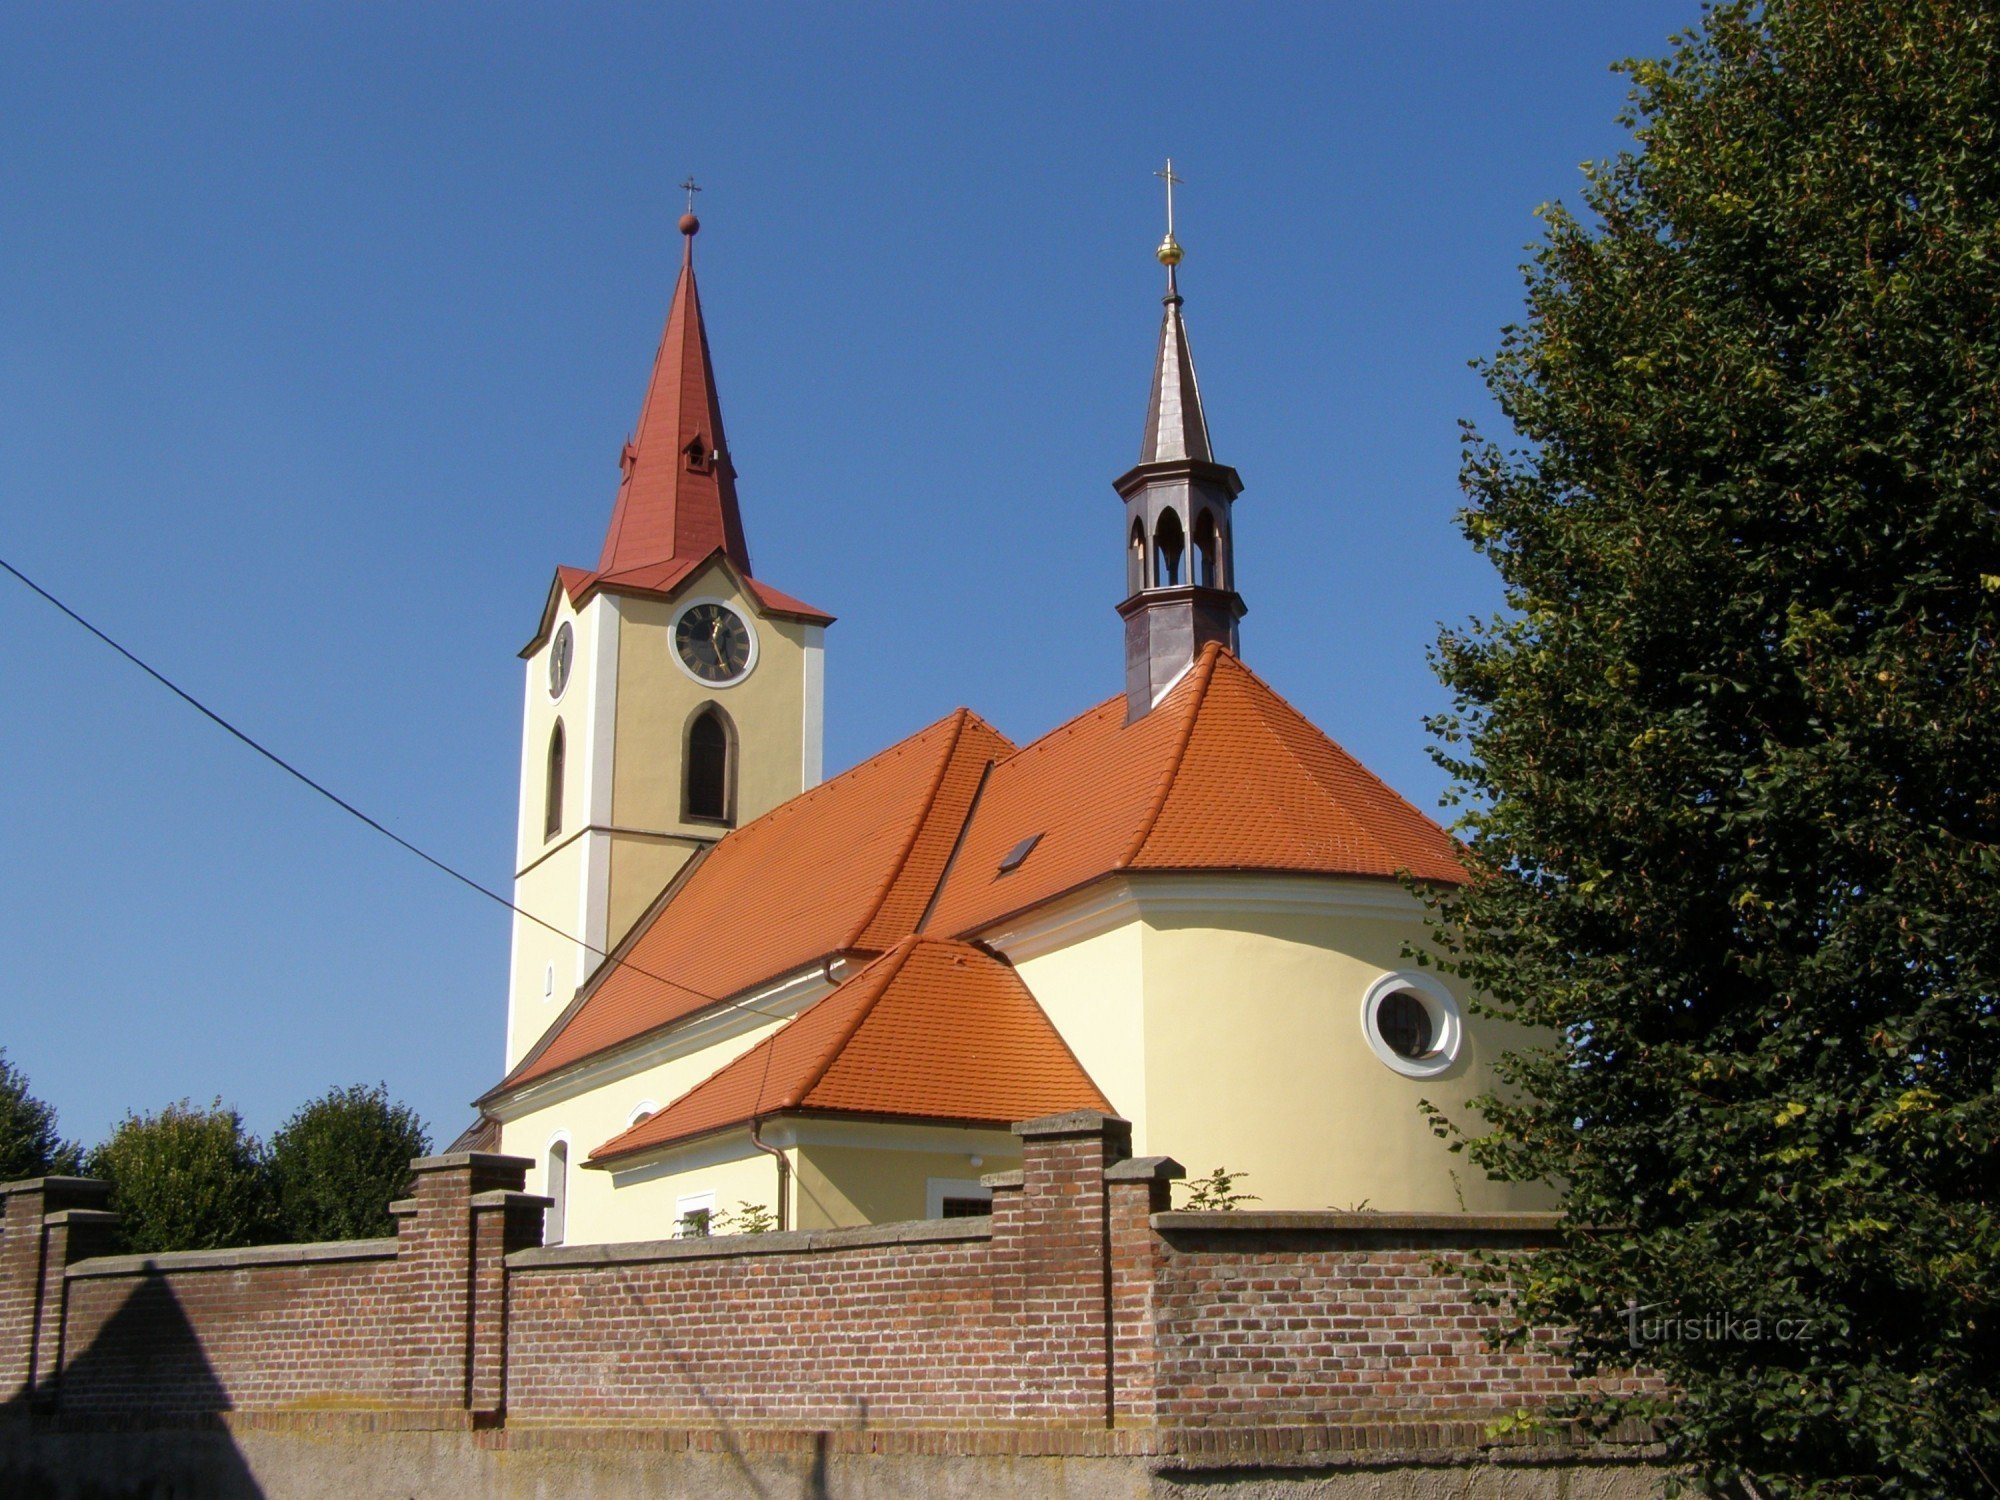 Jasenná - crkva sv. Jurja